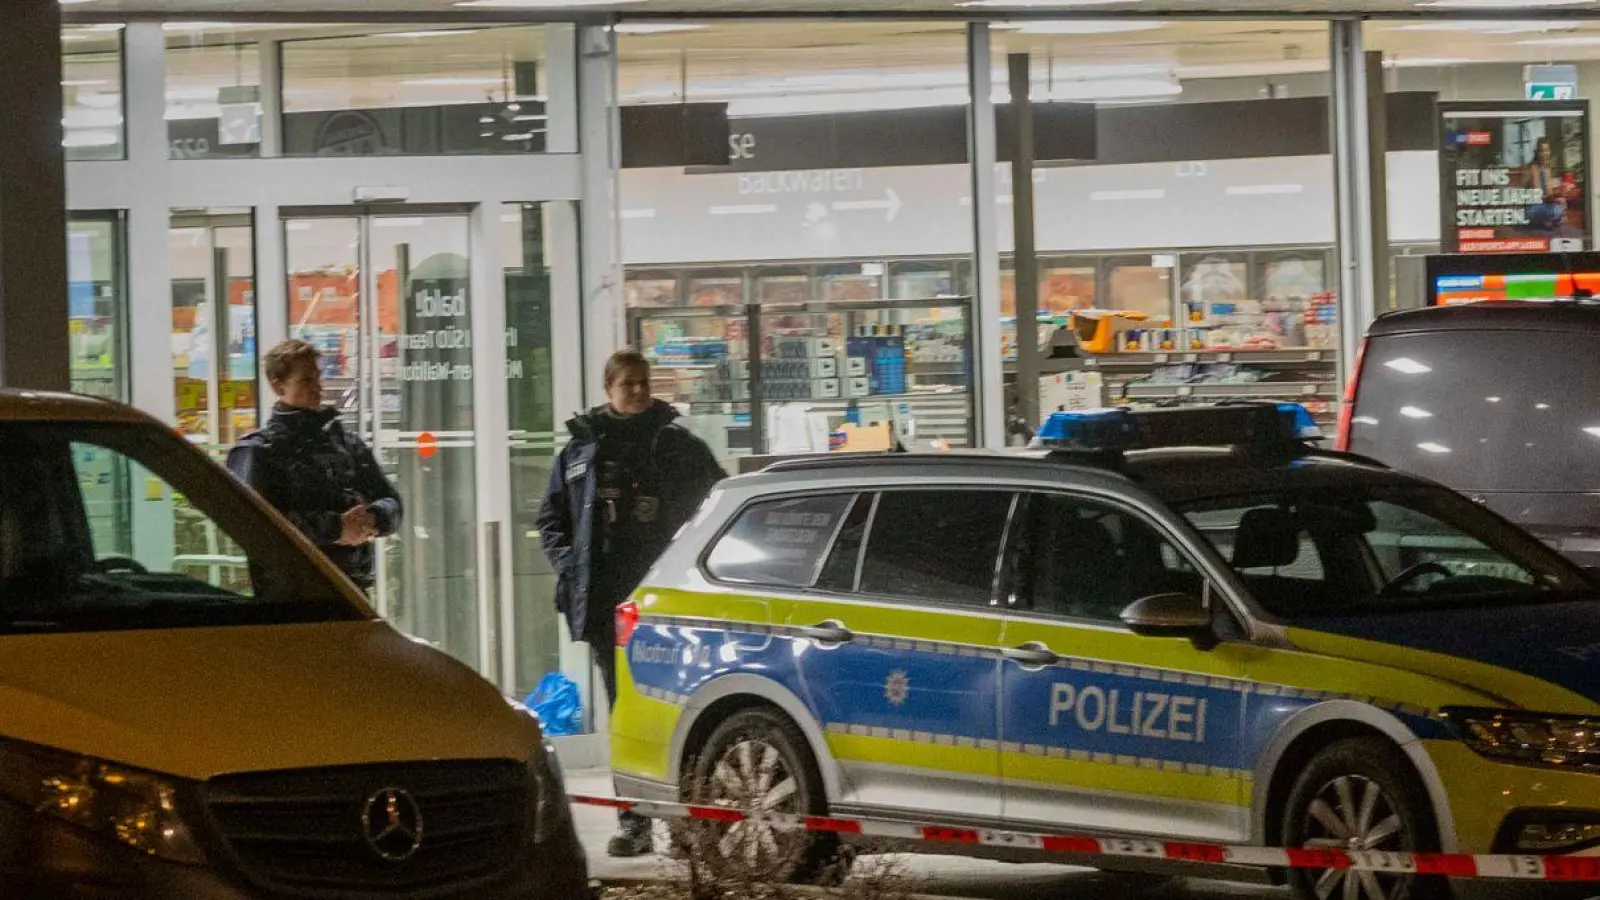 Einsatzkräfte der Polizei sichern den Supermarkt im hessischen Mörfelden. (Foto: Helmut Fricke/dpa)